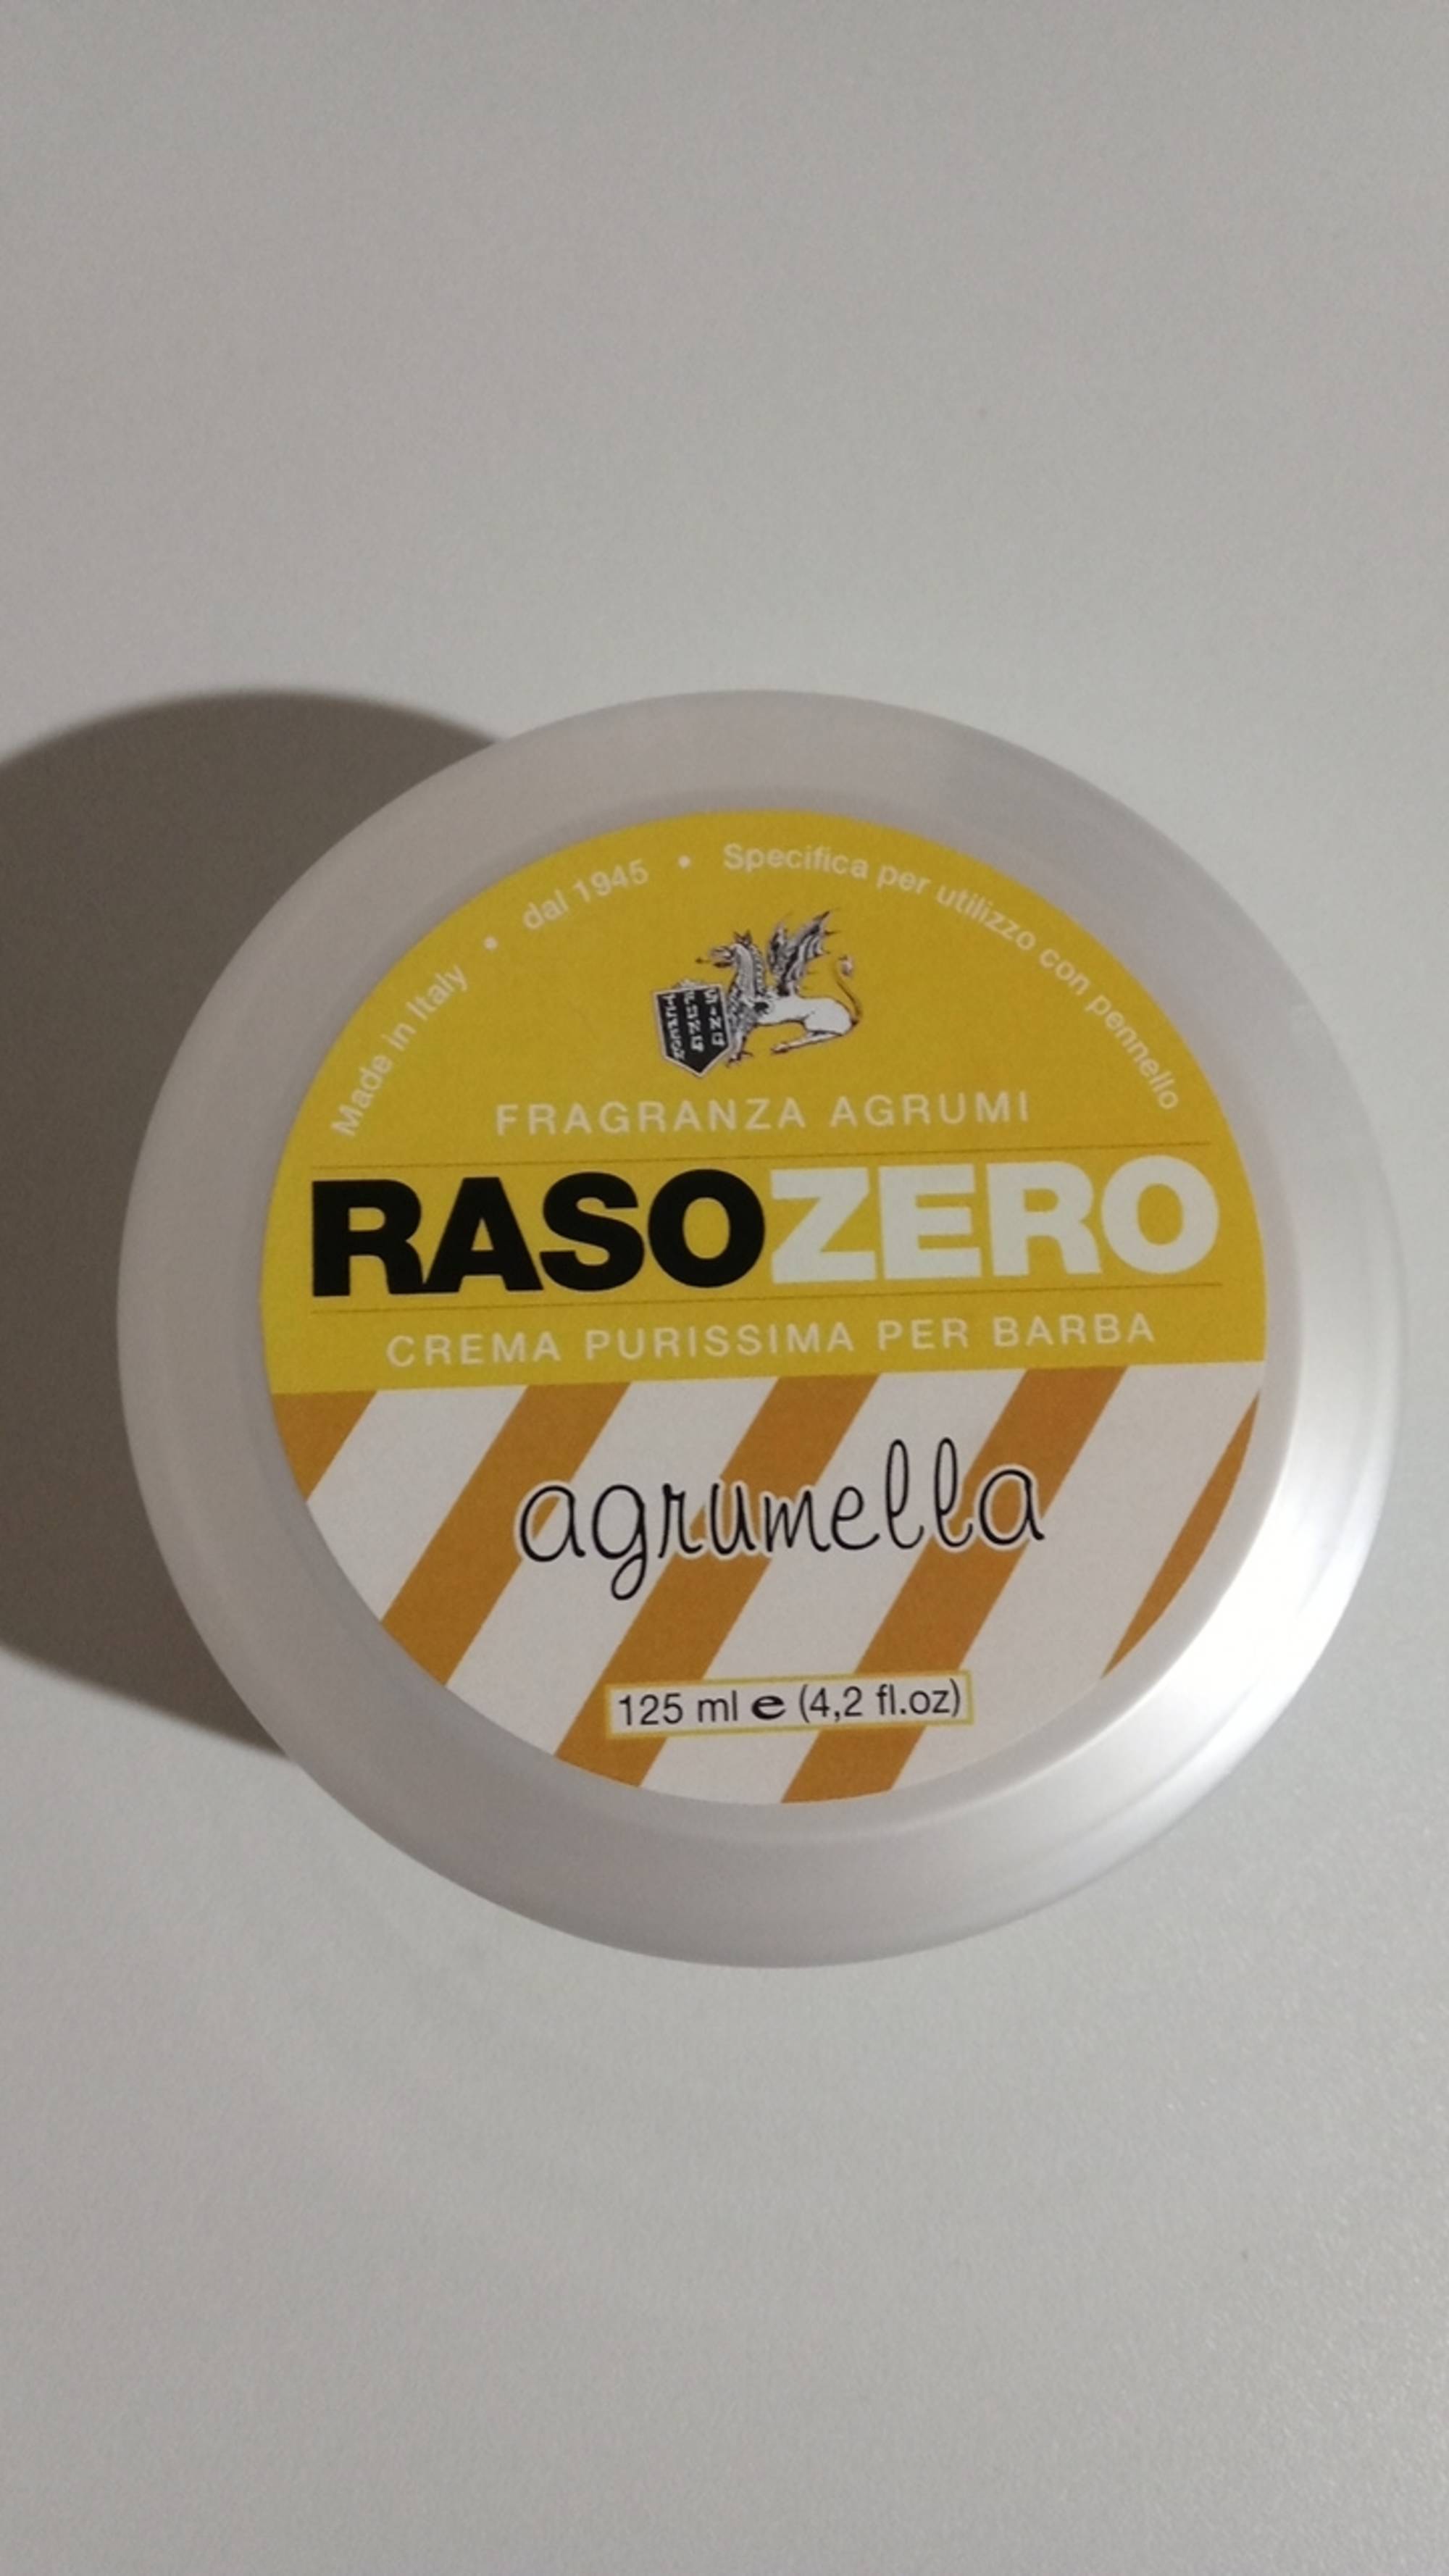 AGRUMELLA - Rasozero - Crema purissima per barba